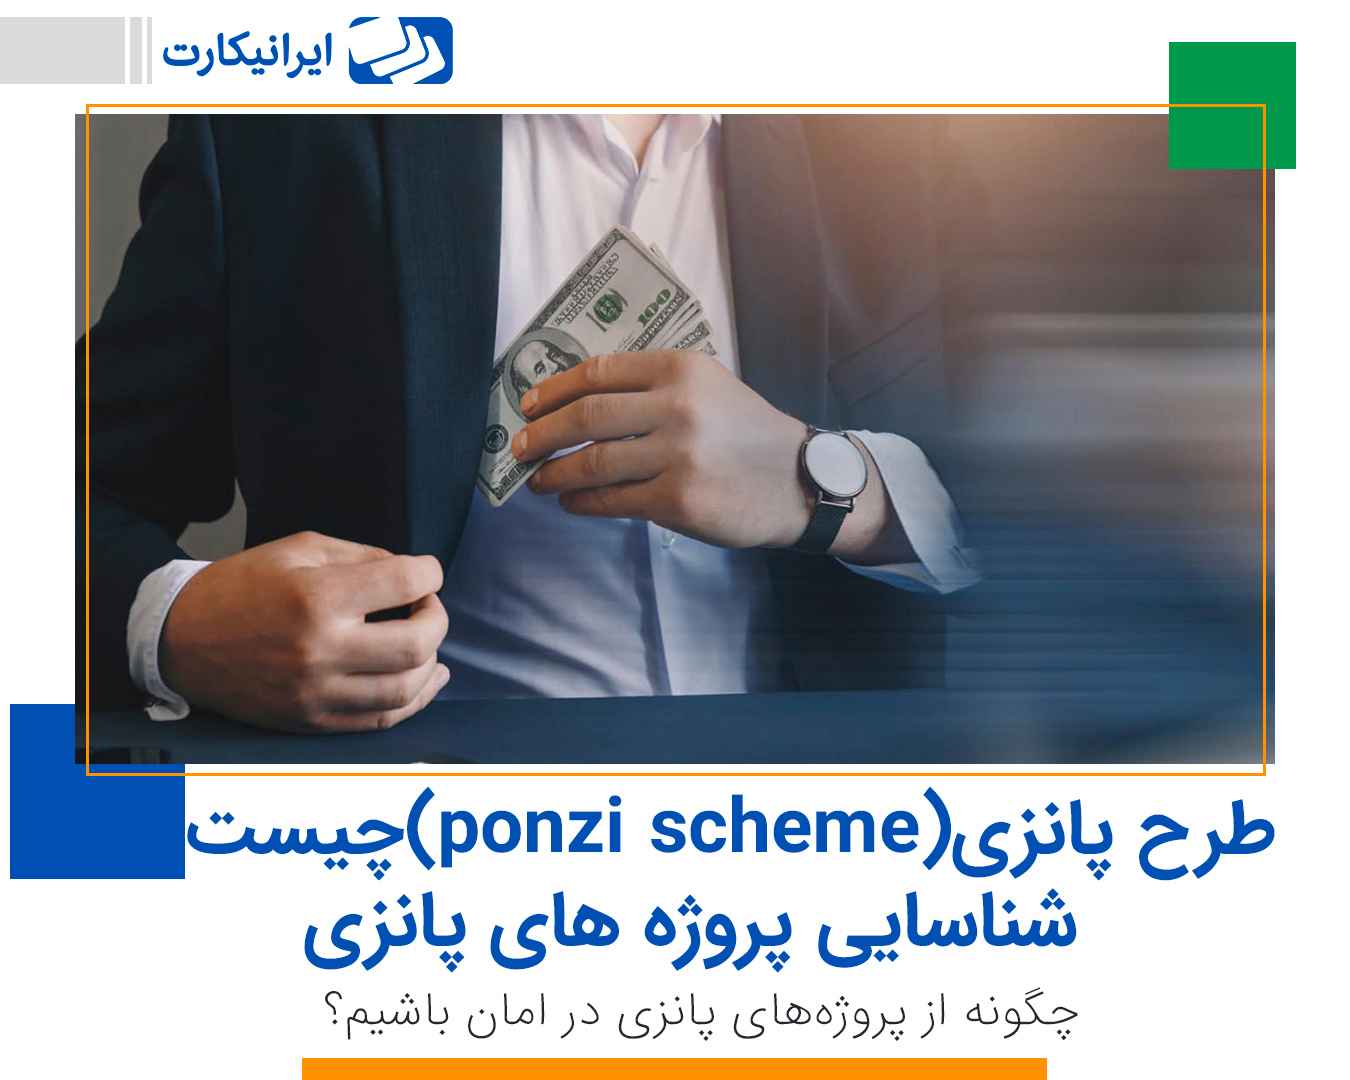 طرح پانزی (ponzi scheme) چیست؟ شناسایی پروژه های پانزی